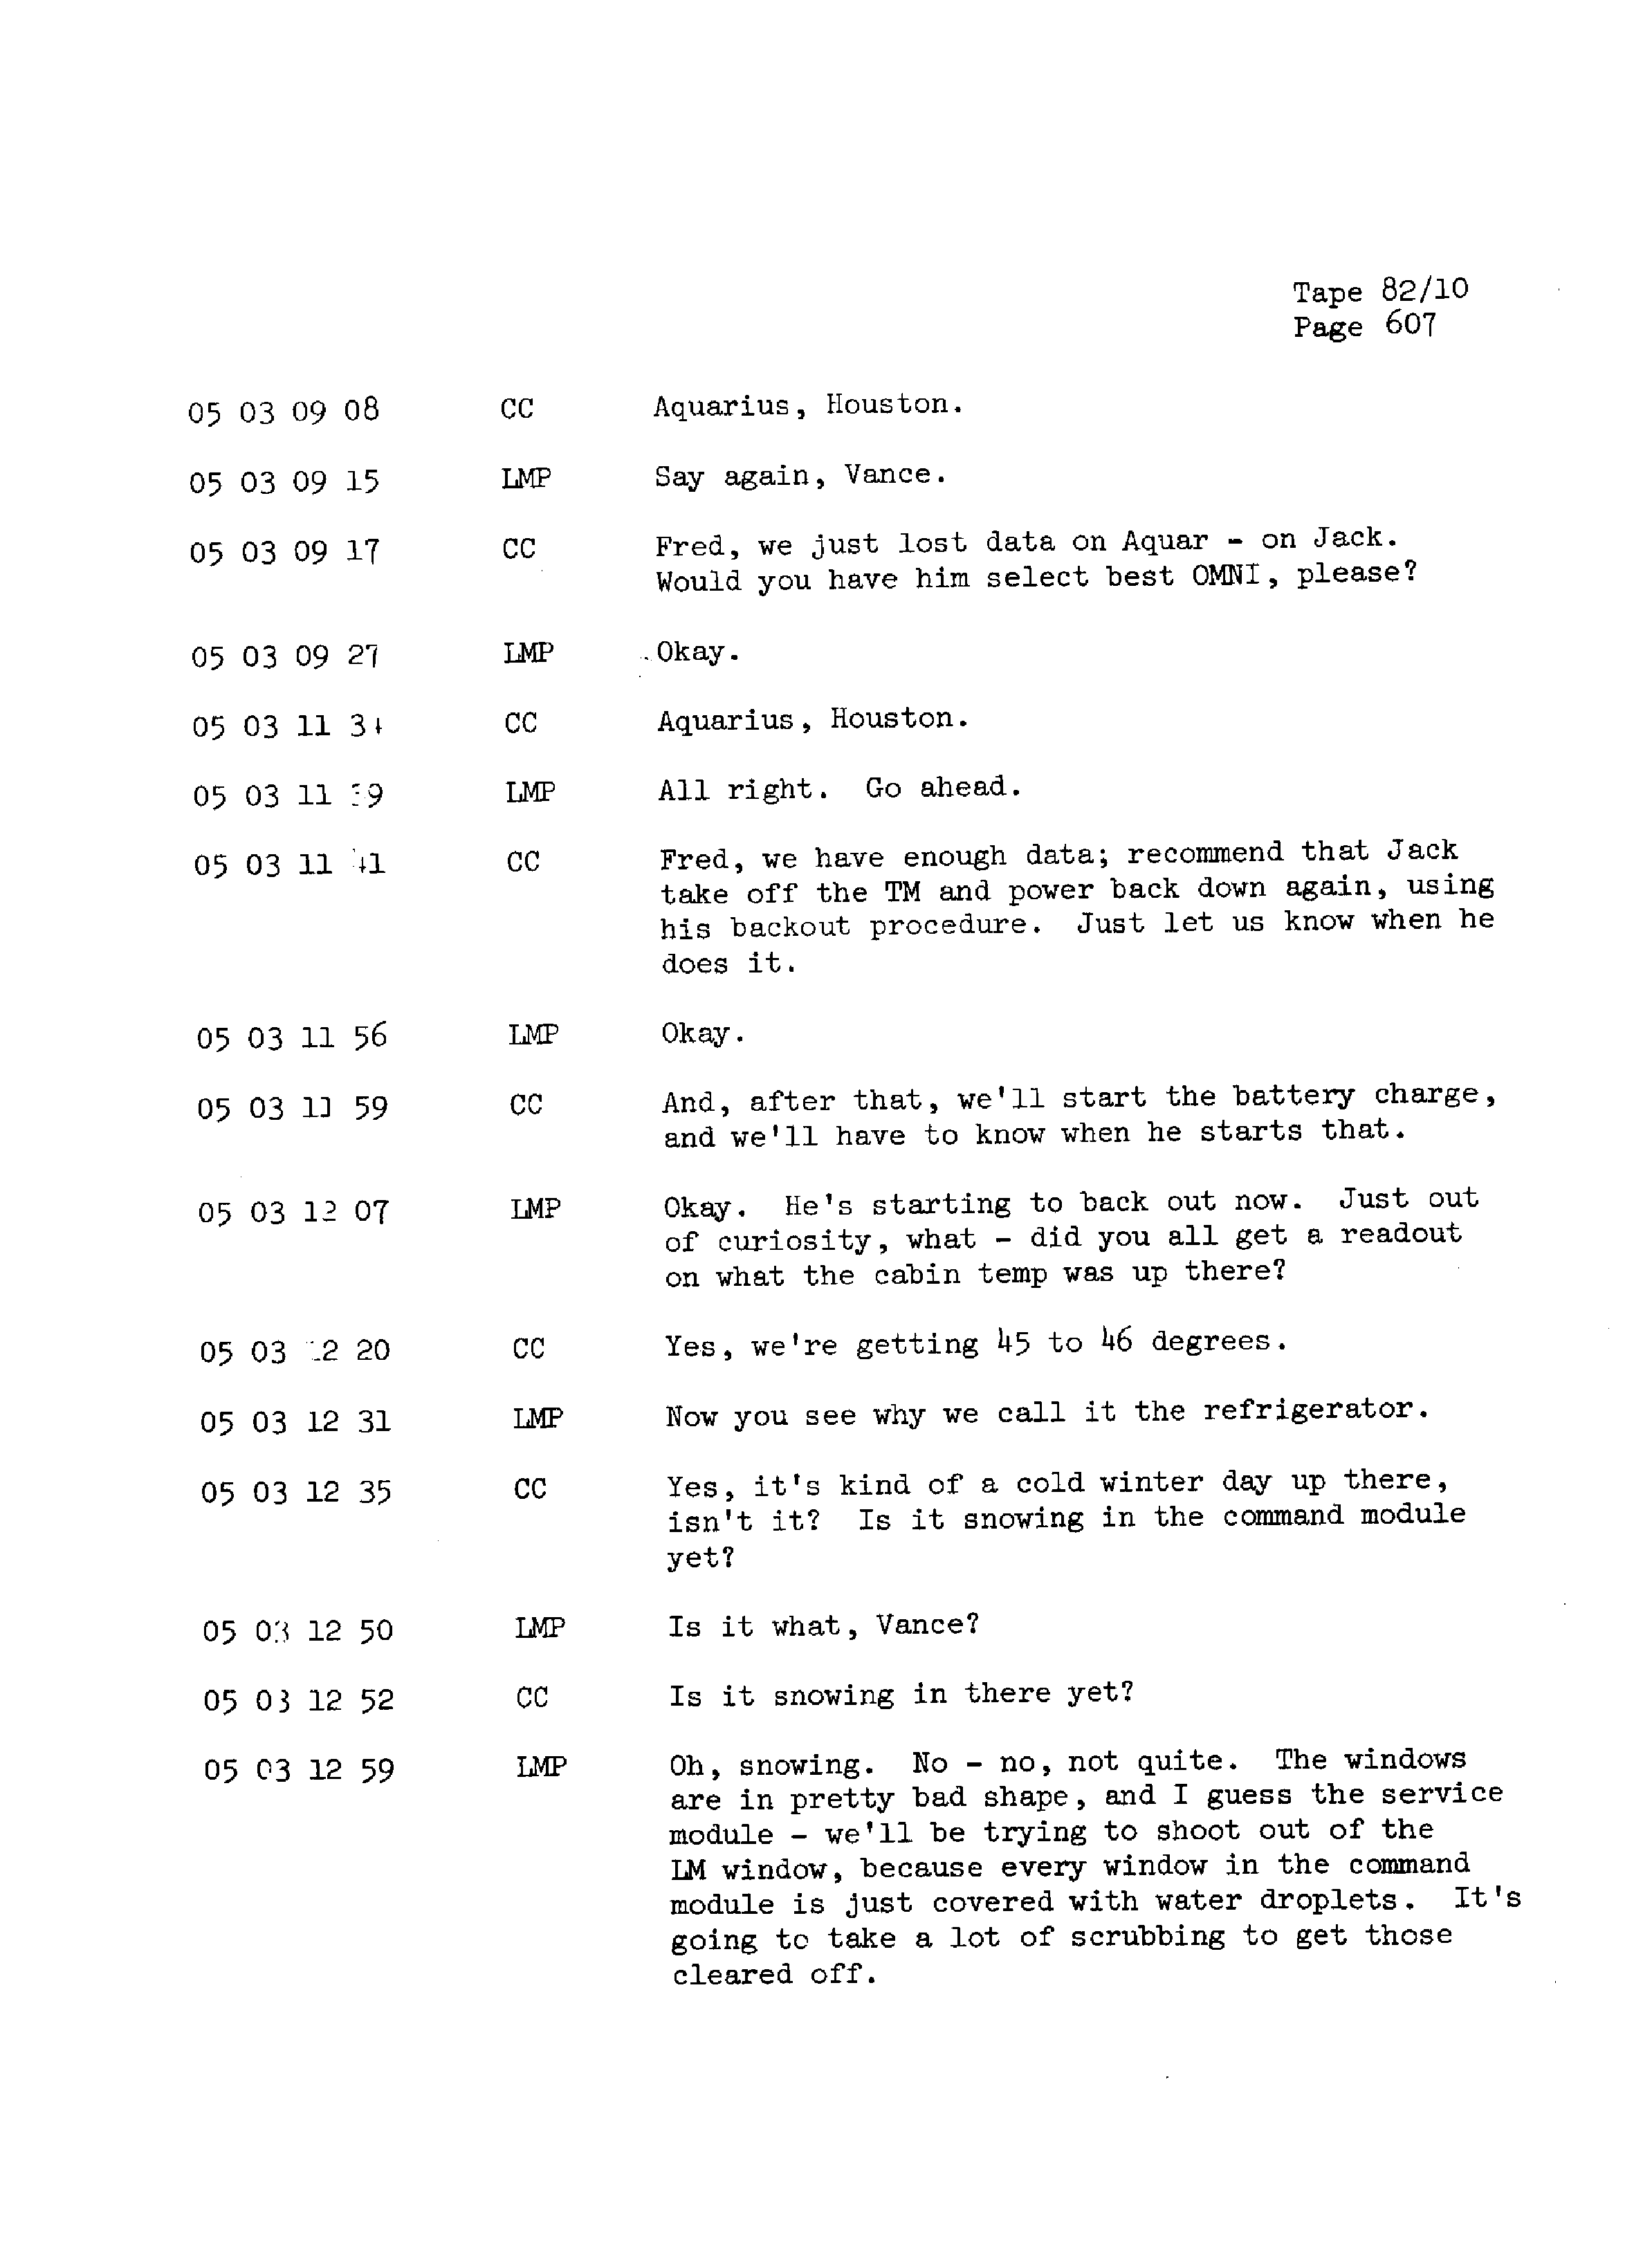 Page 614 of Apollo 13’s original transcript